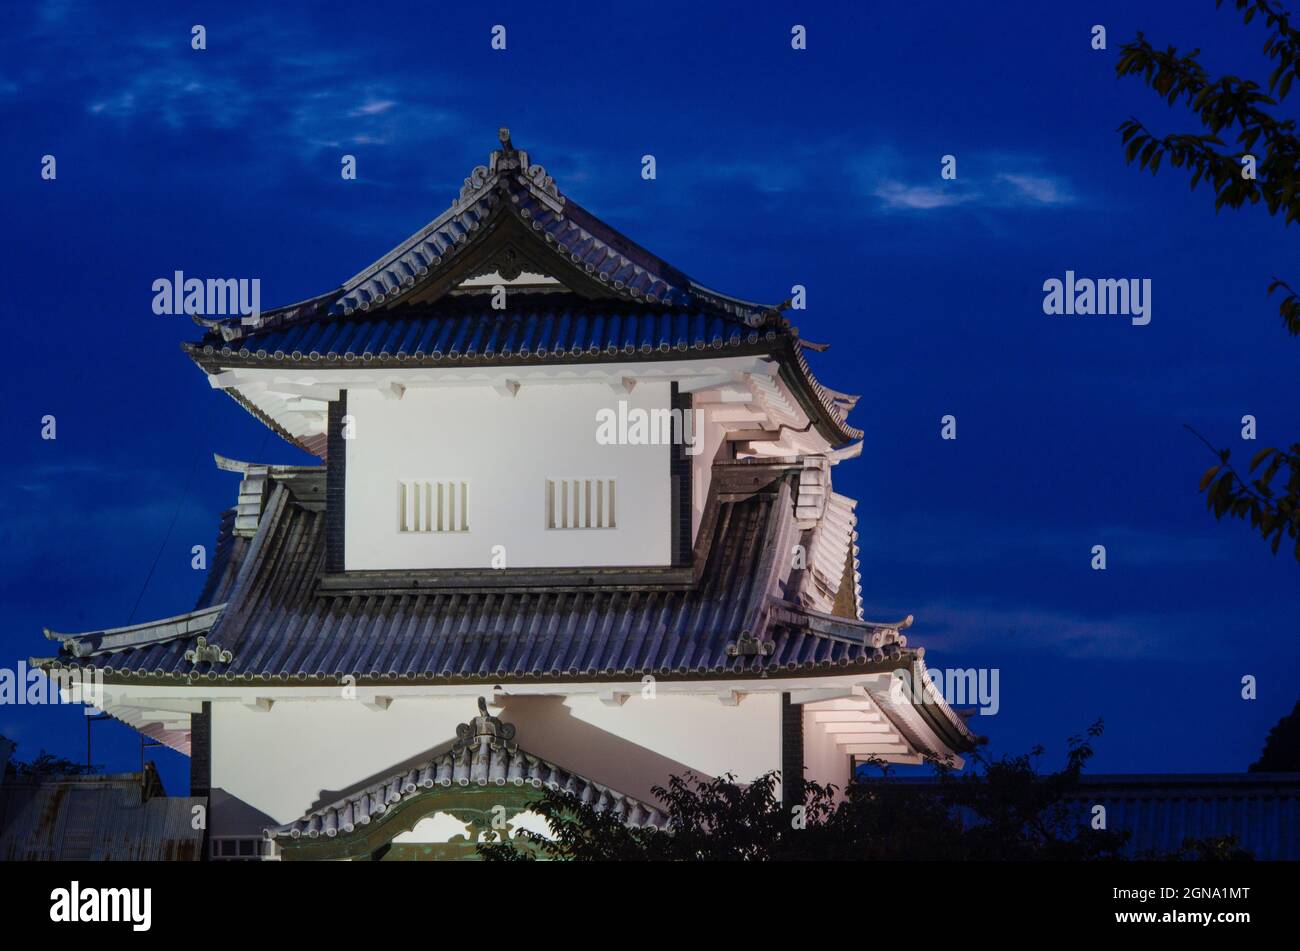 Kanazawa Castle, Dusk, Sunset, Illuminated, Traditional, Japanese castle, Architecture, Historic, Landmark Stock Photo